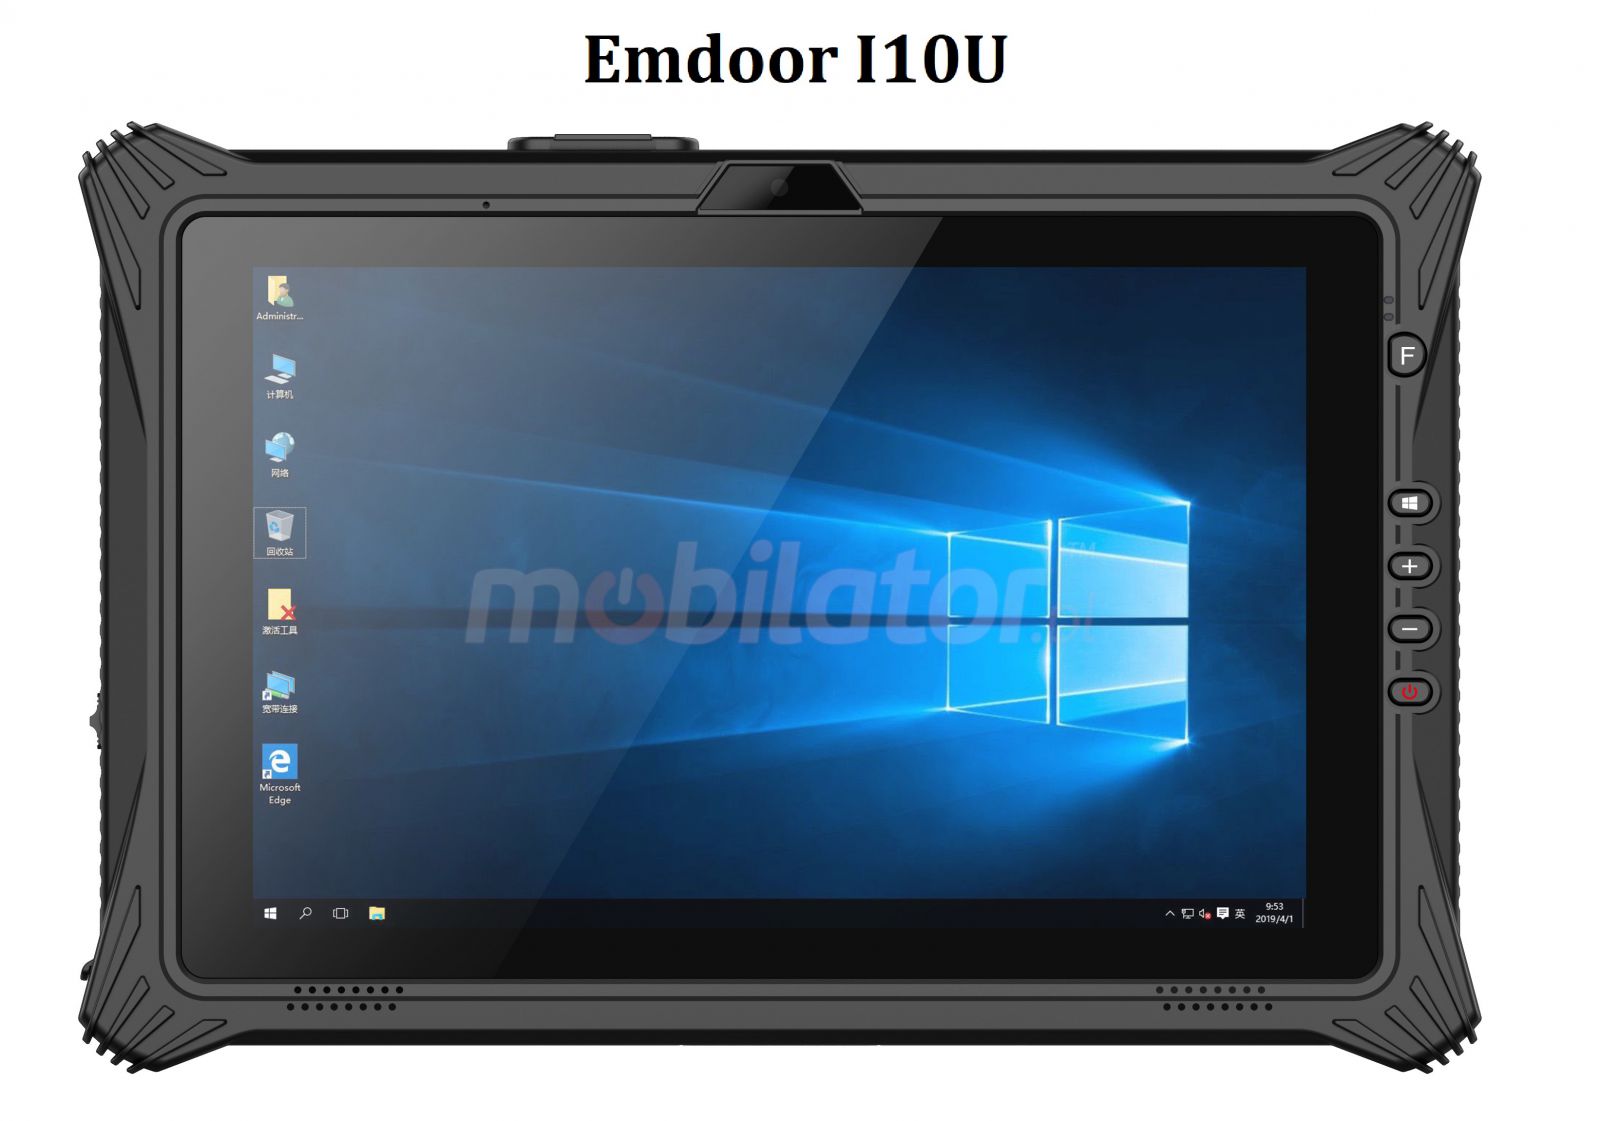 Emdoor I10U v.20 - Odporny  na upadki 10.1-calowy tablet z Intel i7, skanerem kodw kreskowych 2D, NFC, 16GB RAM i dyskiem SSD 256GB, Windows 10 PRO